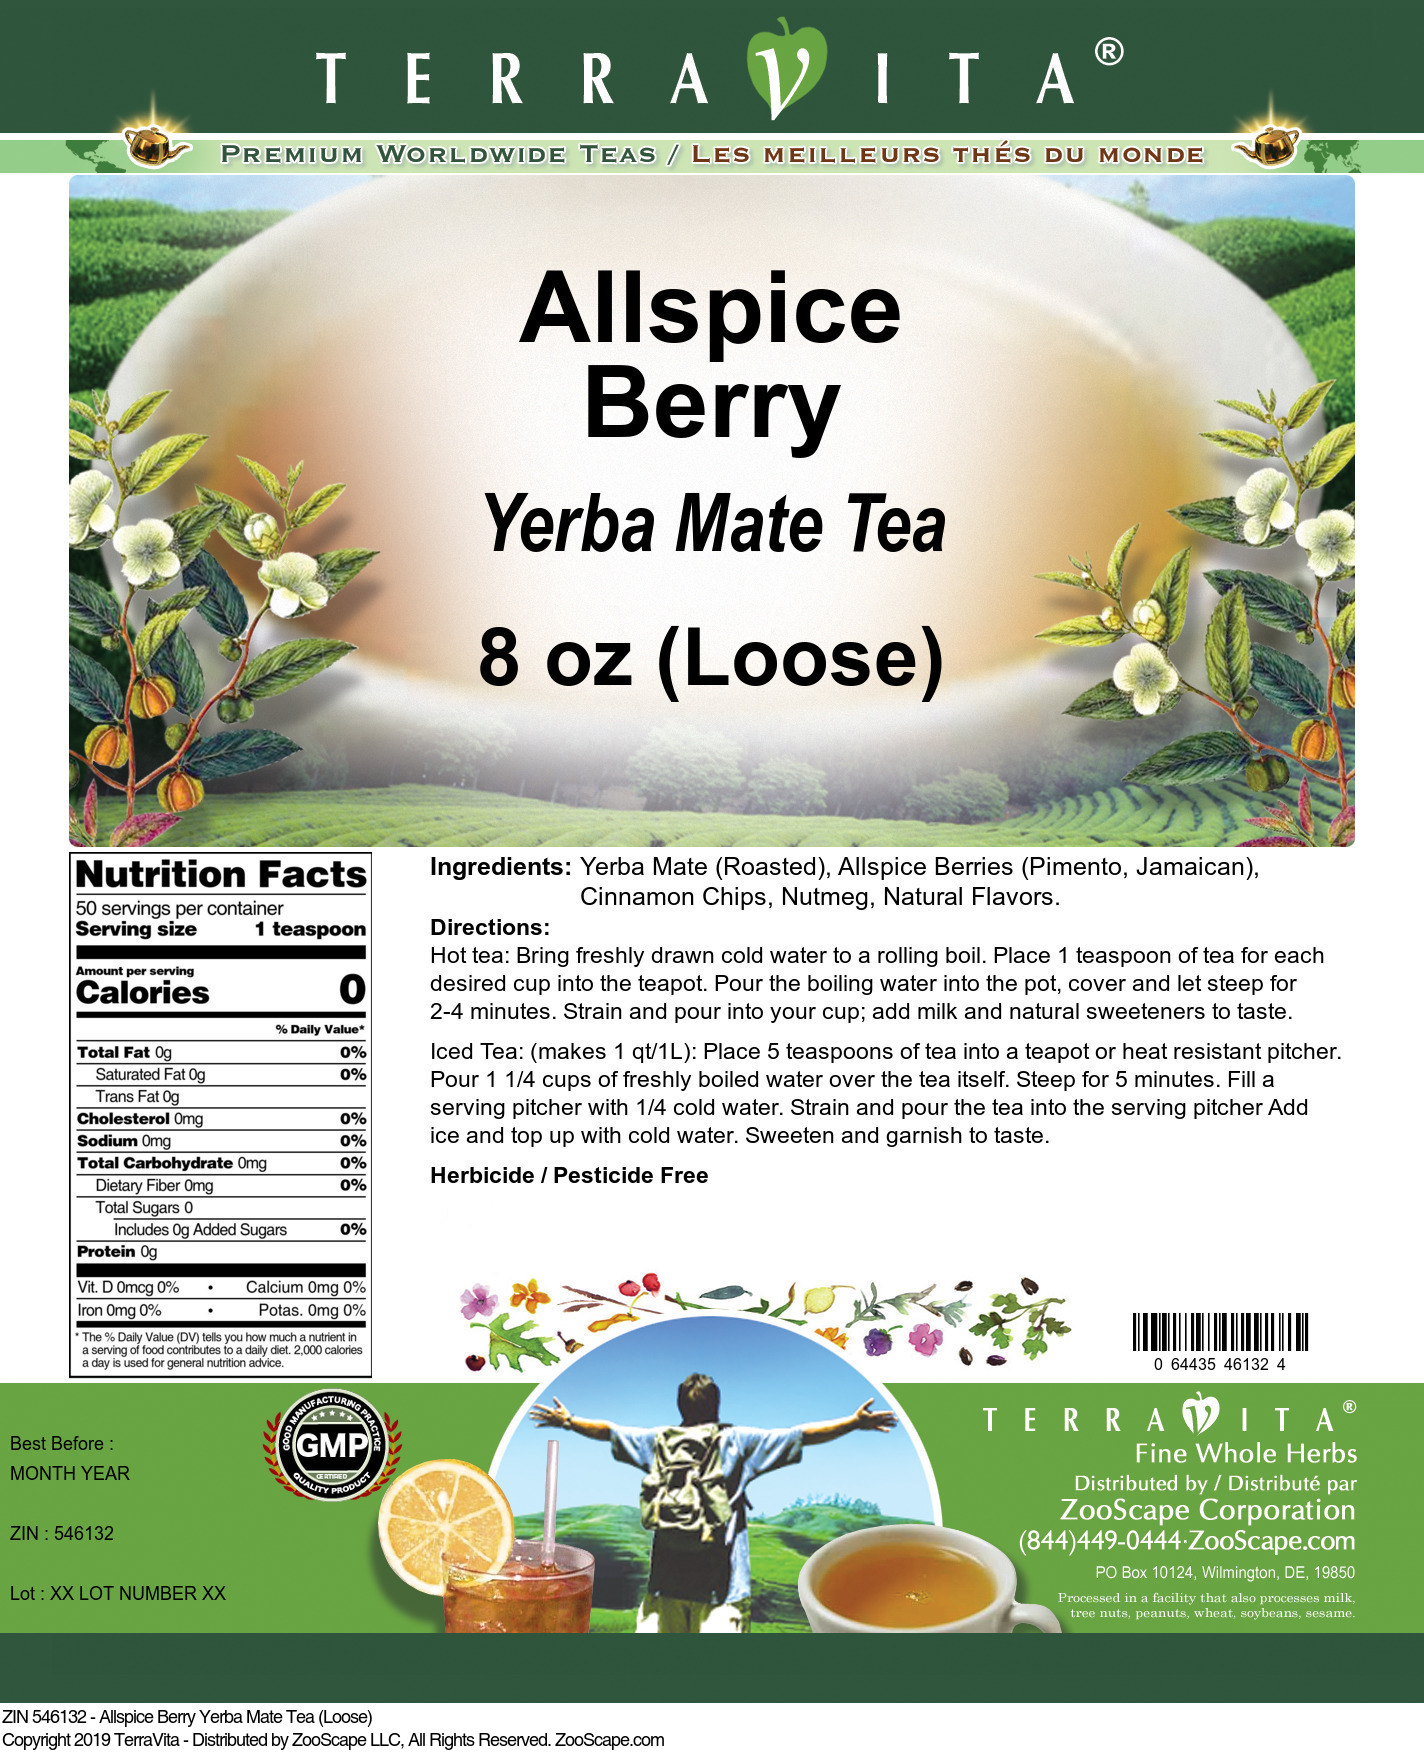 Allspice Berry Yerba Mate Tea (Loose) - Label